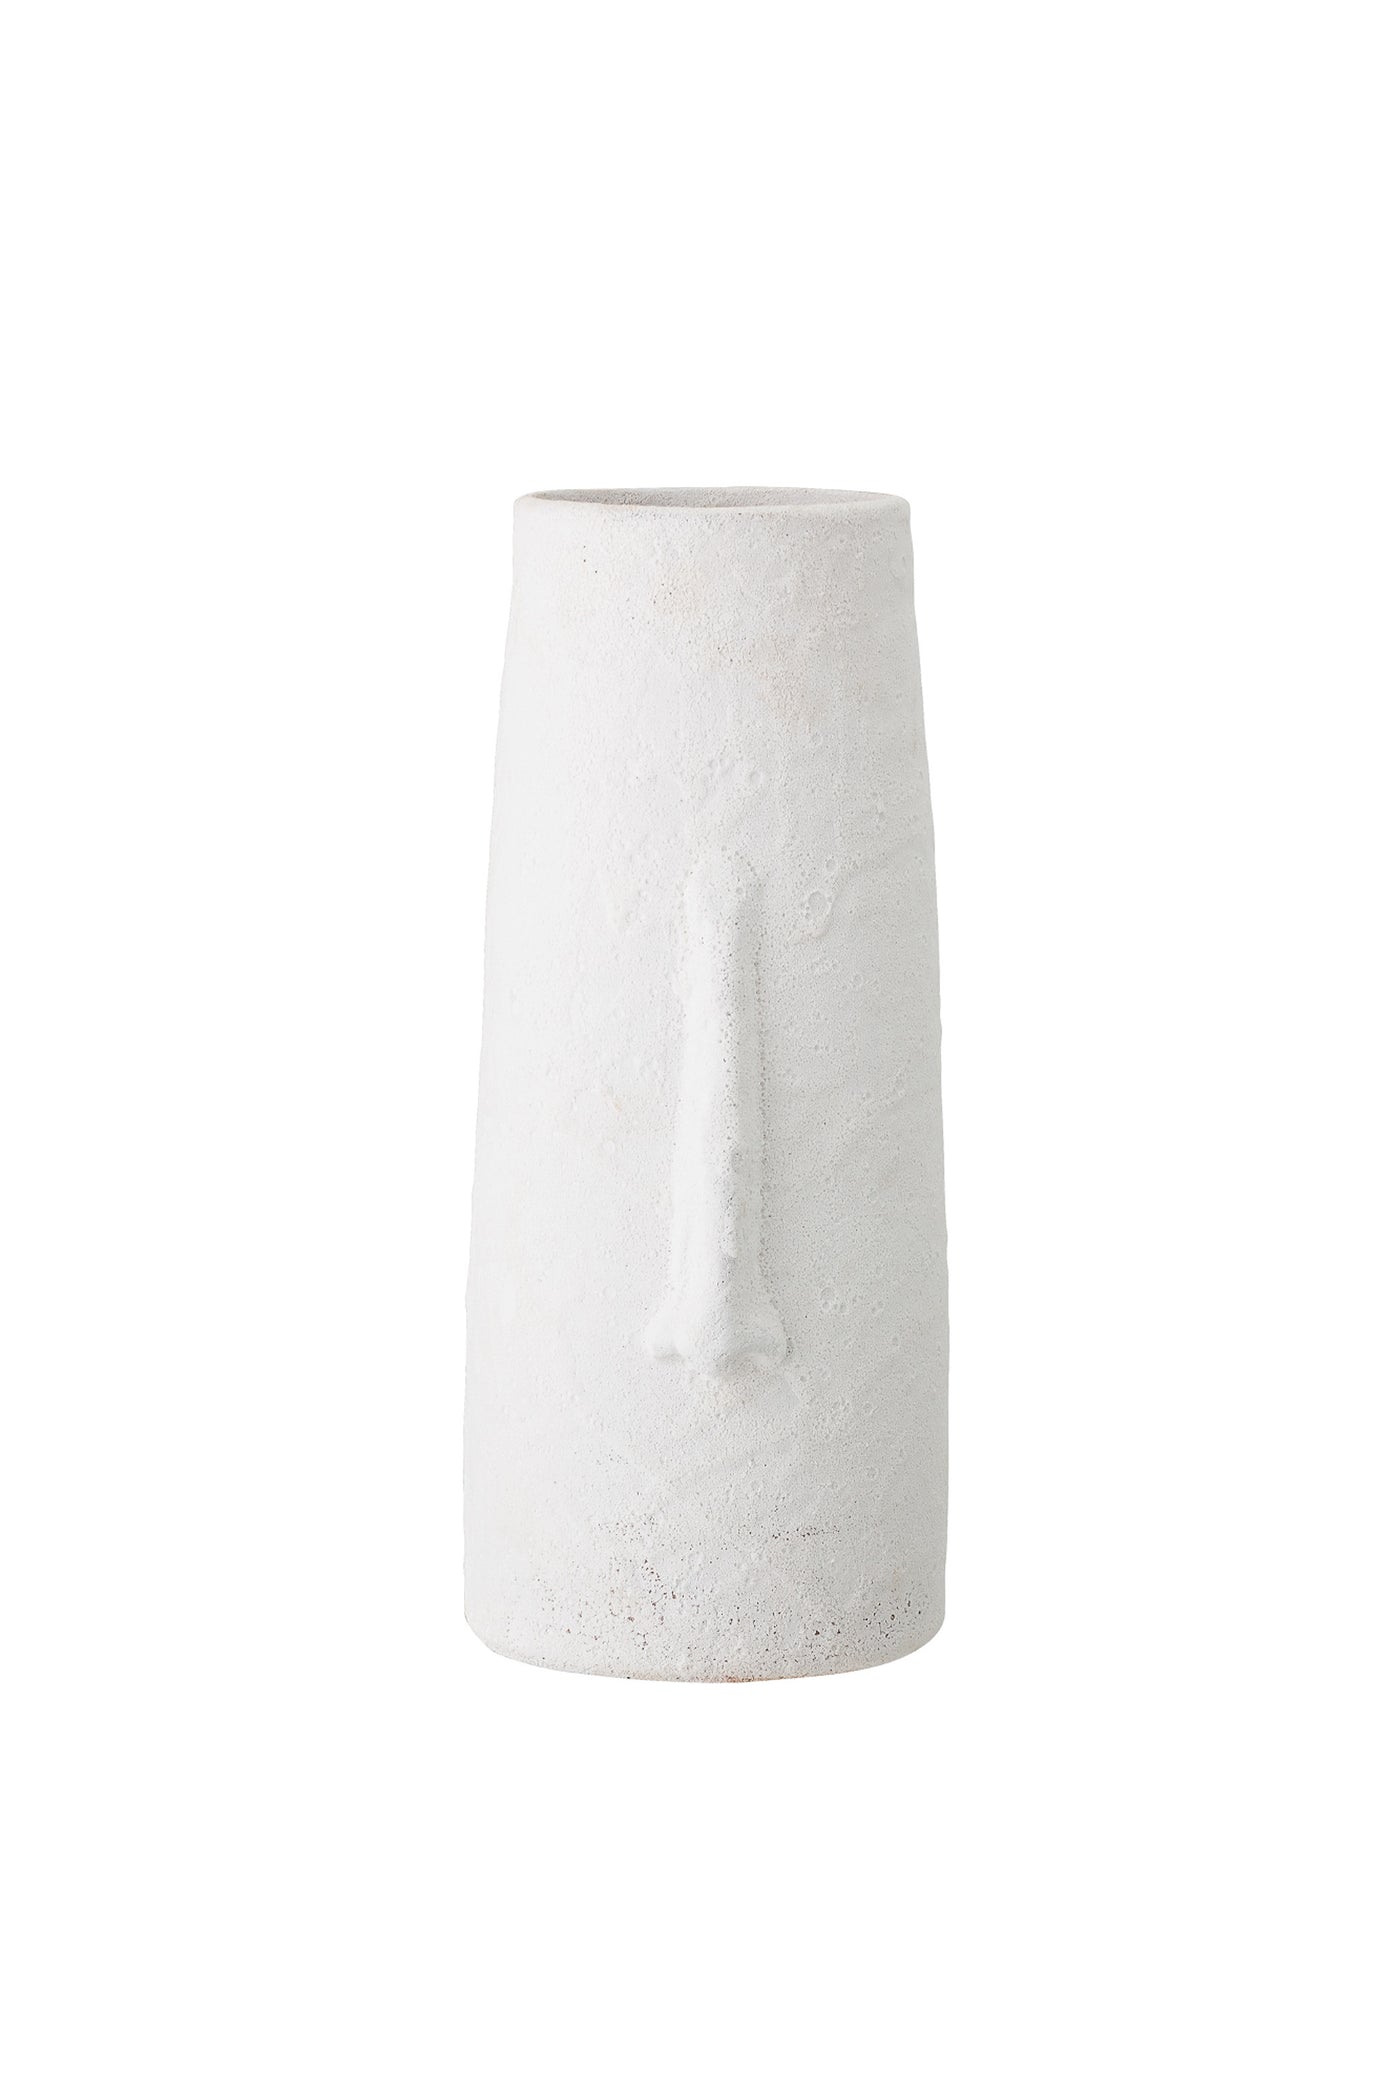 muud Berican Deco Vase Deco Vase White